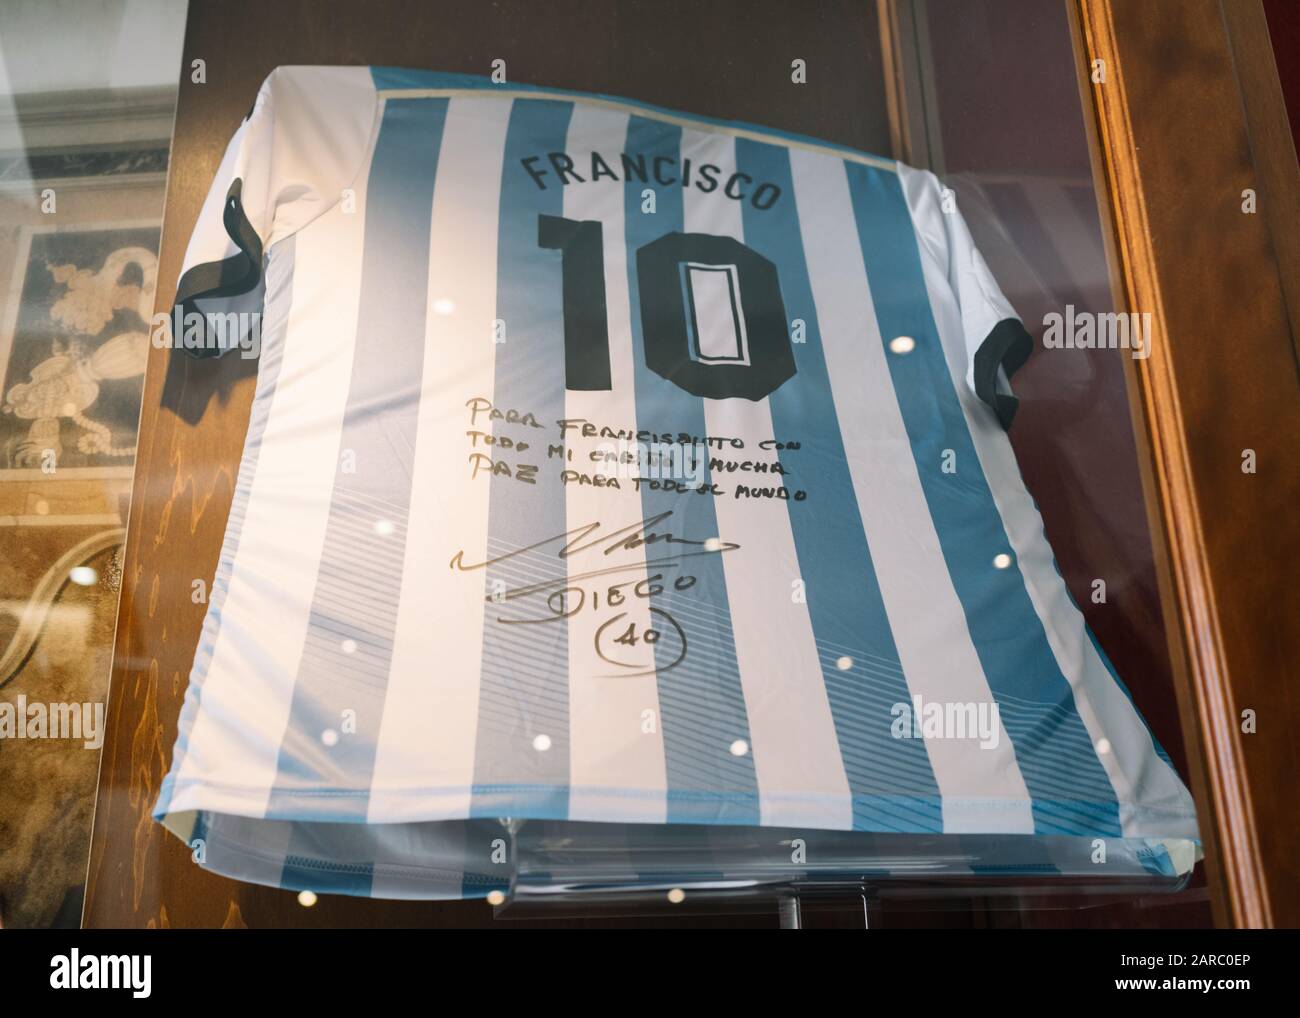 maradona signed shirt